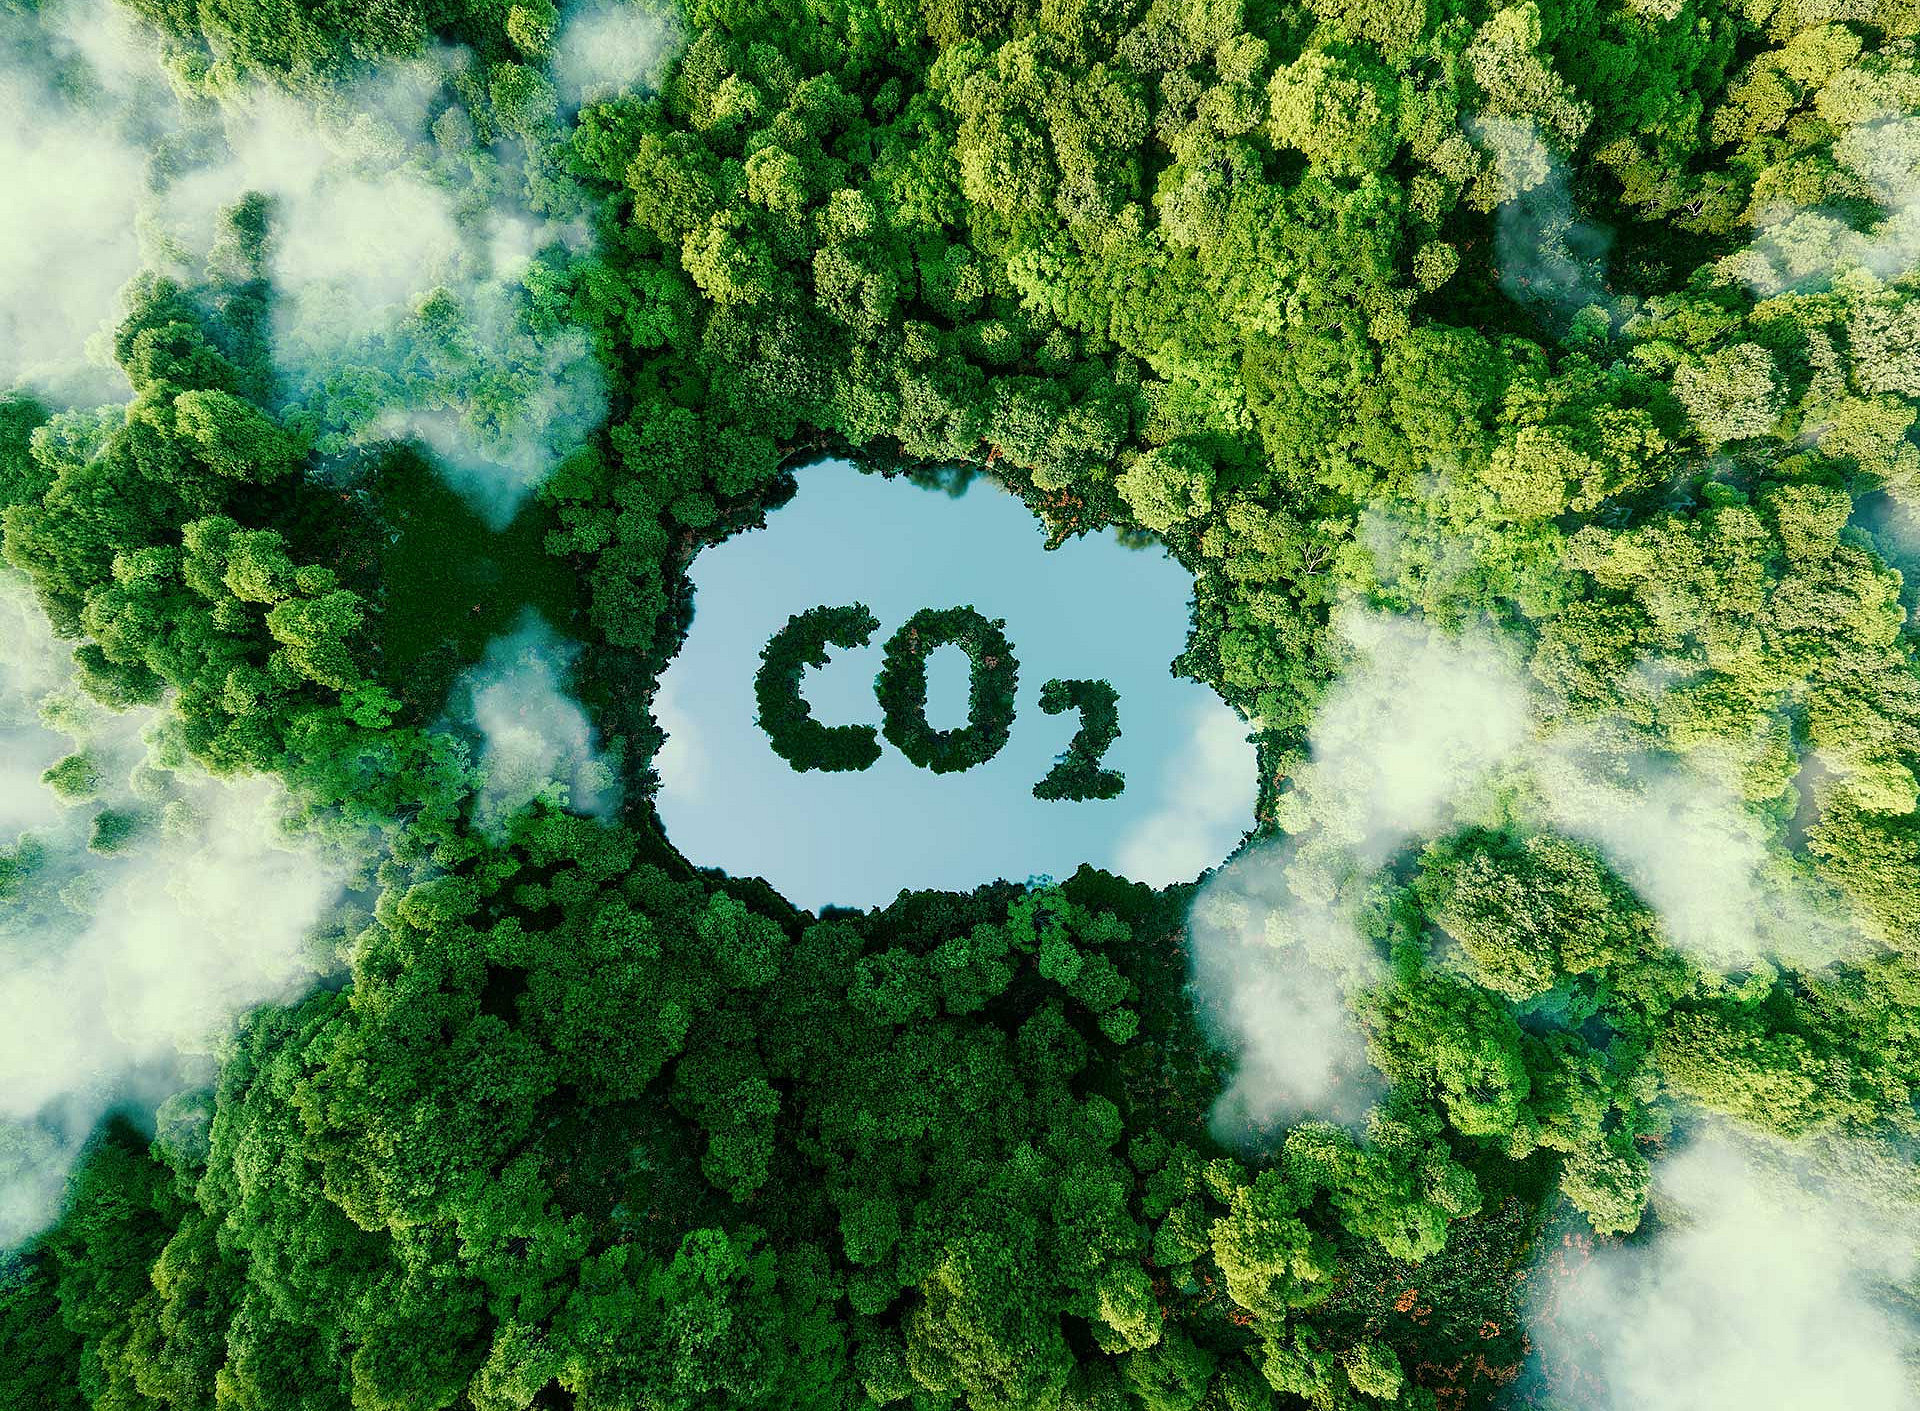 Regenwald aus der Vogelperspektive, "Wolke", in der "CO2" steht ©malp - stock.adobe.com